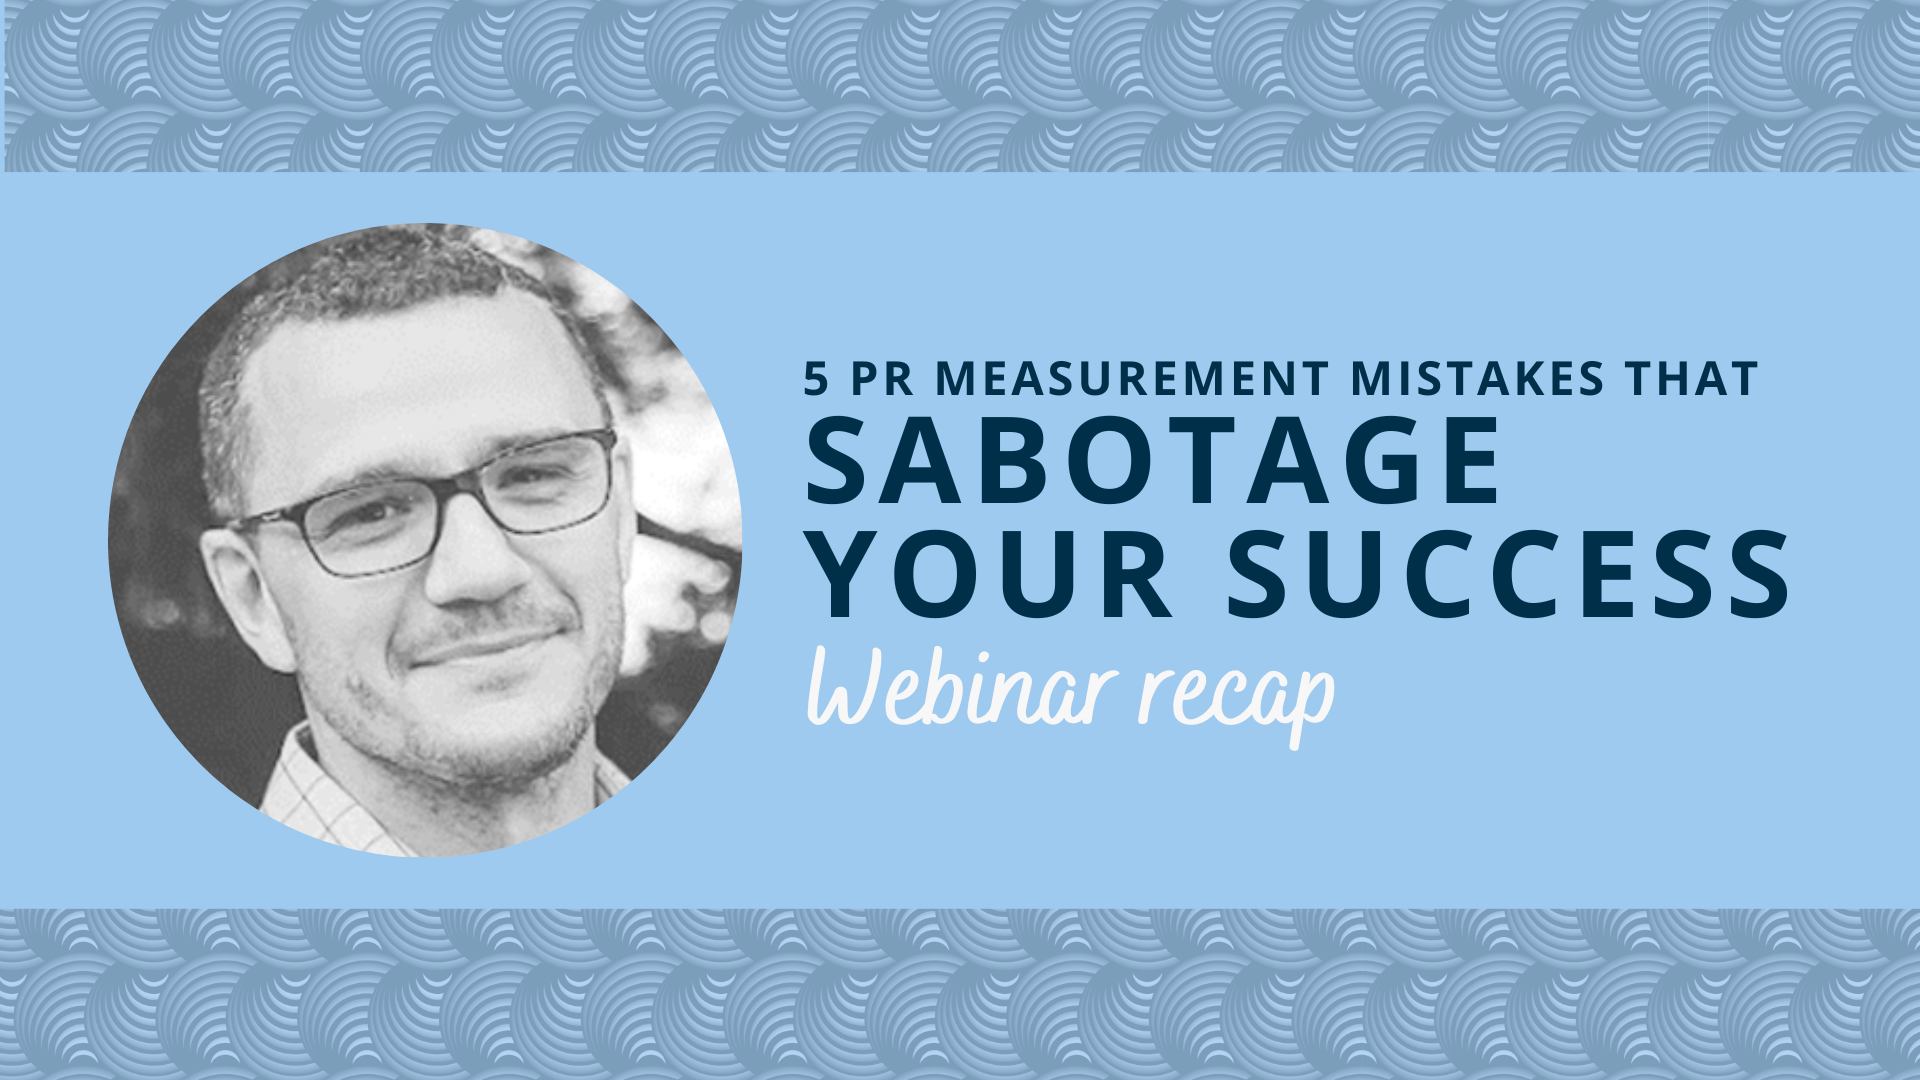 The 5 PR measurement mistakes sabotaging your success: Agility webinar recap